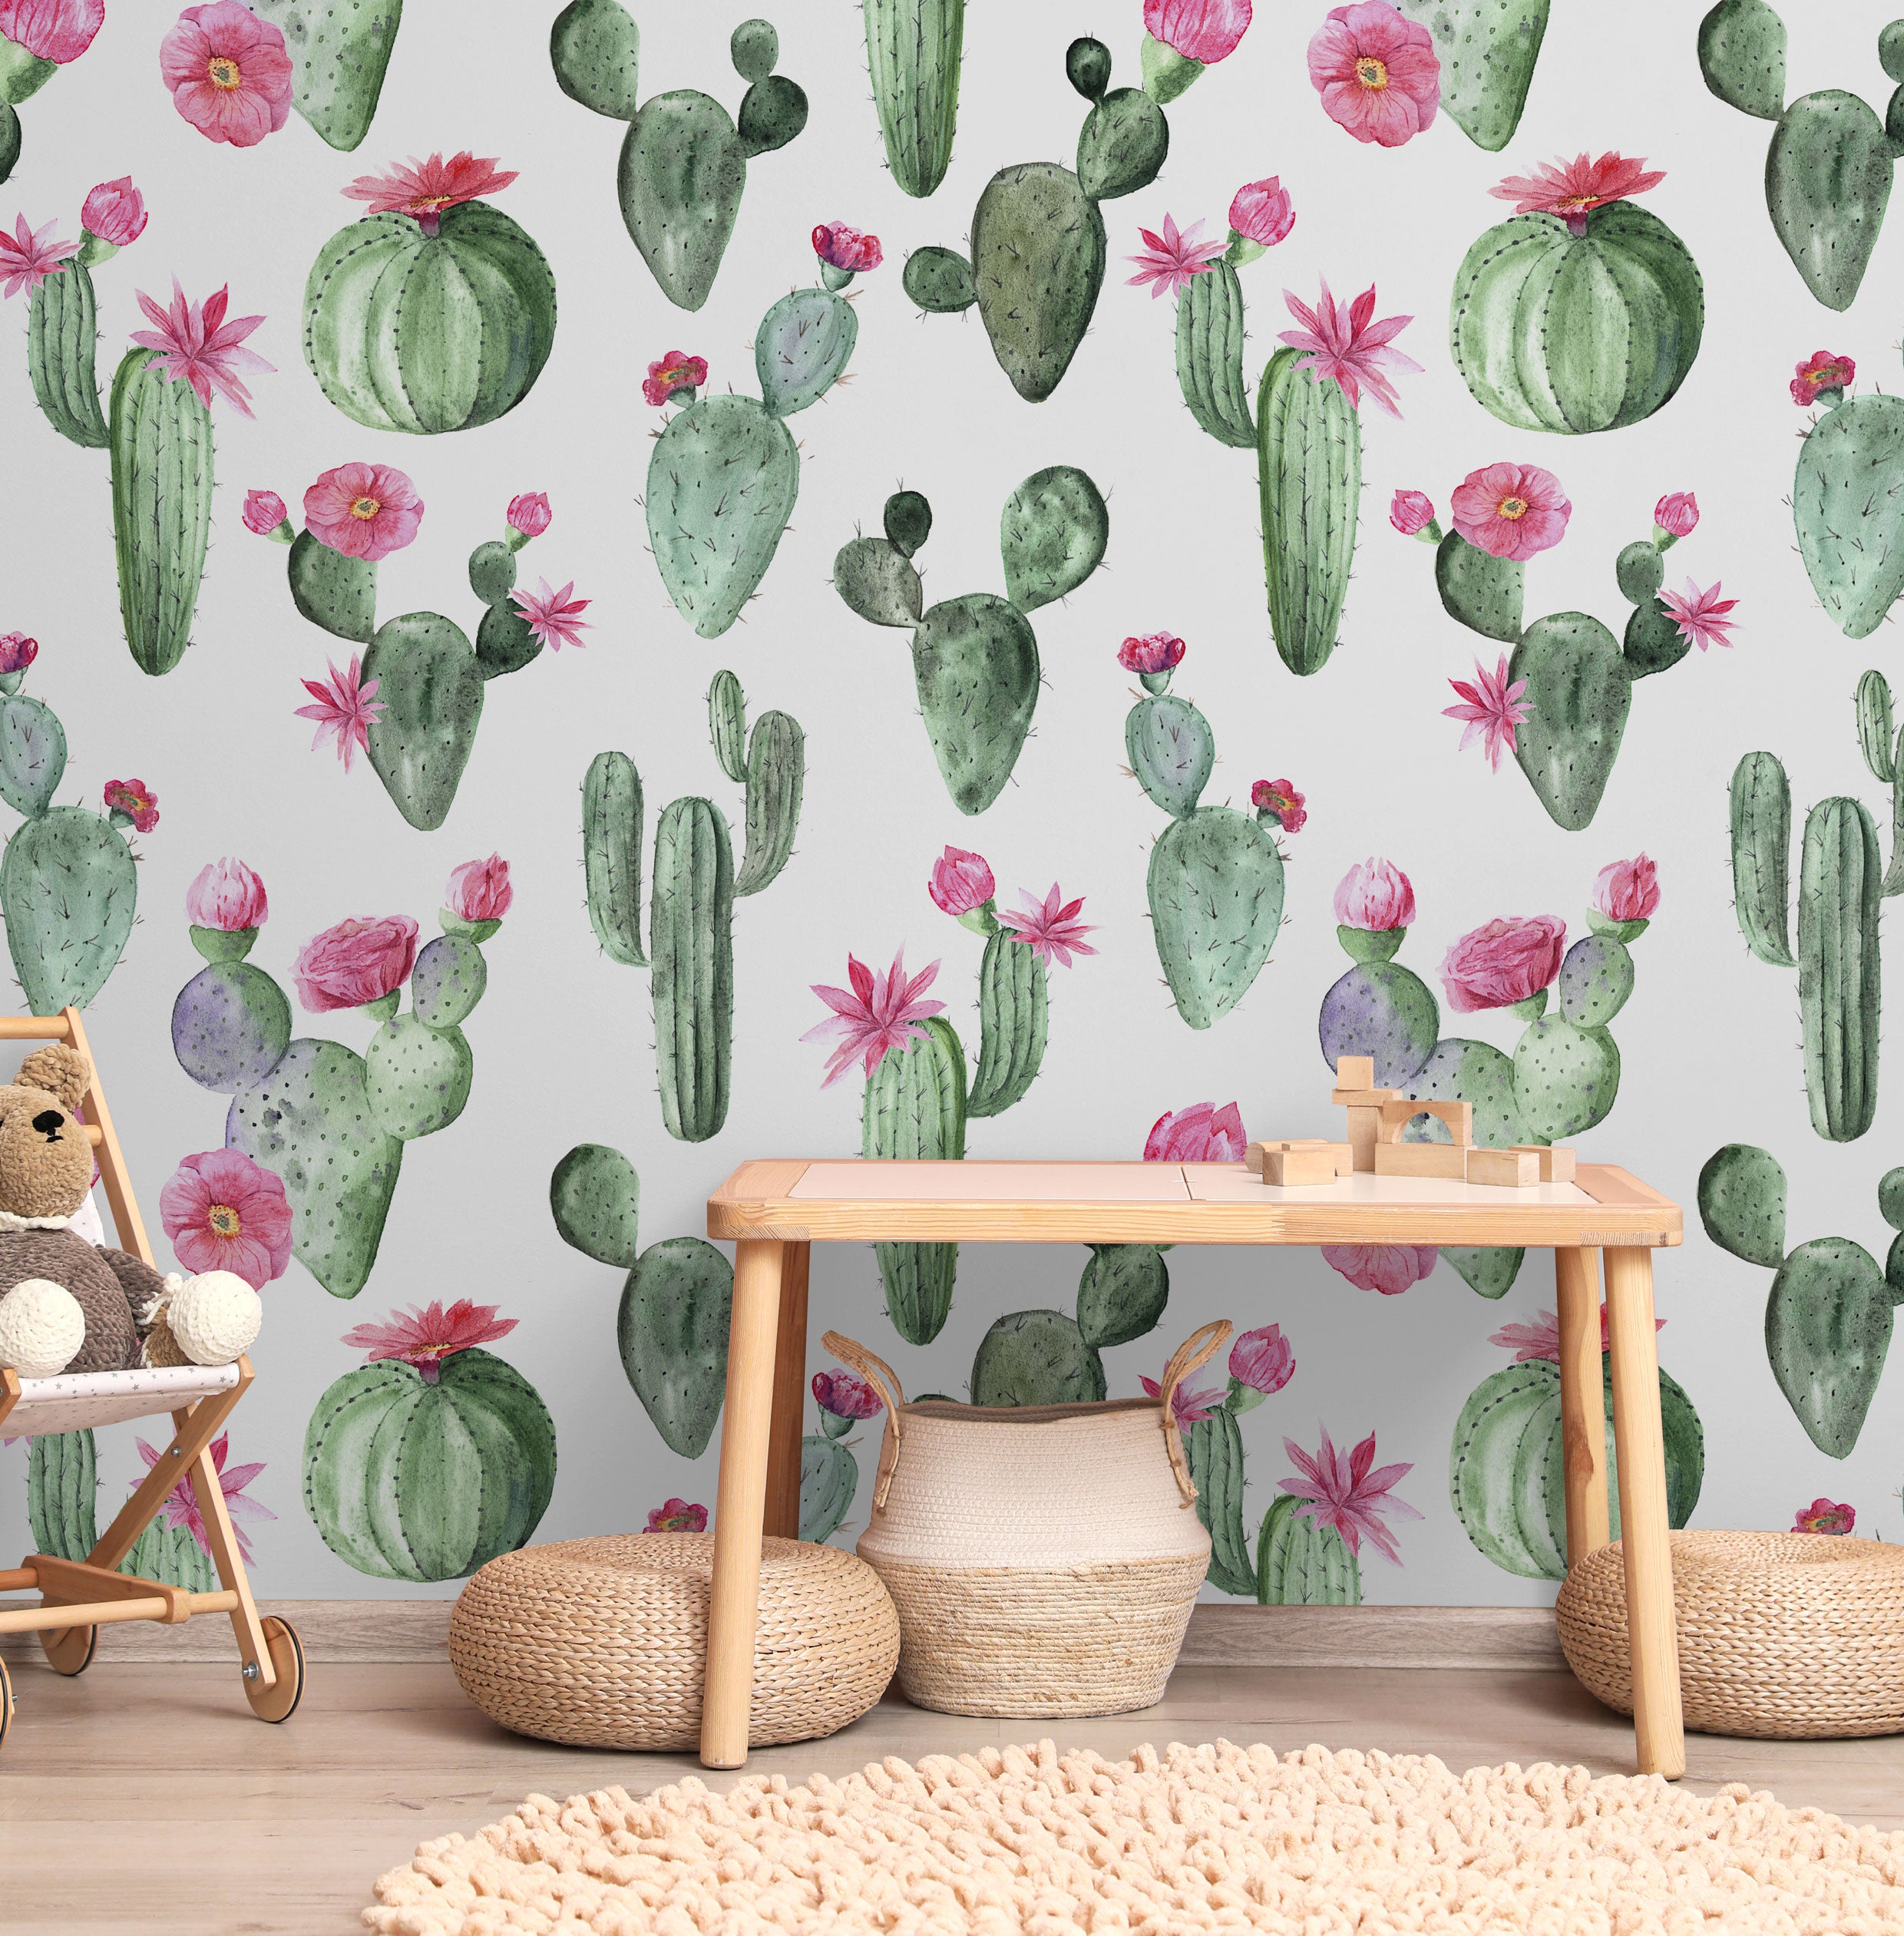 Prickly Princess Wallpaper Wallpaper - Wall Blush from WALL BLUSH